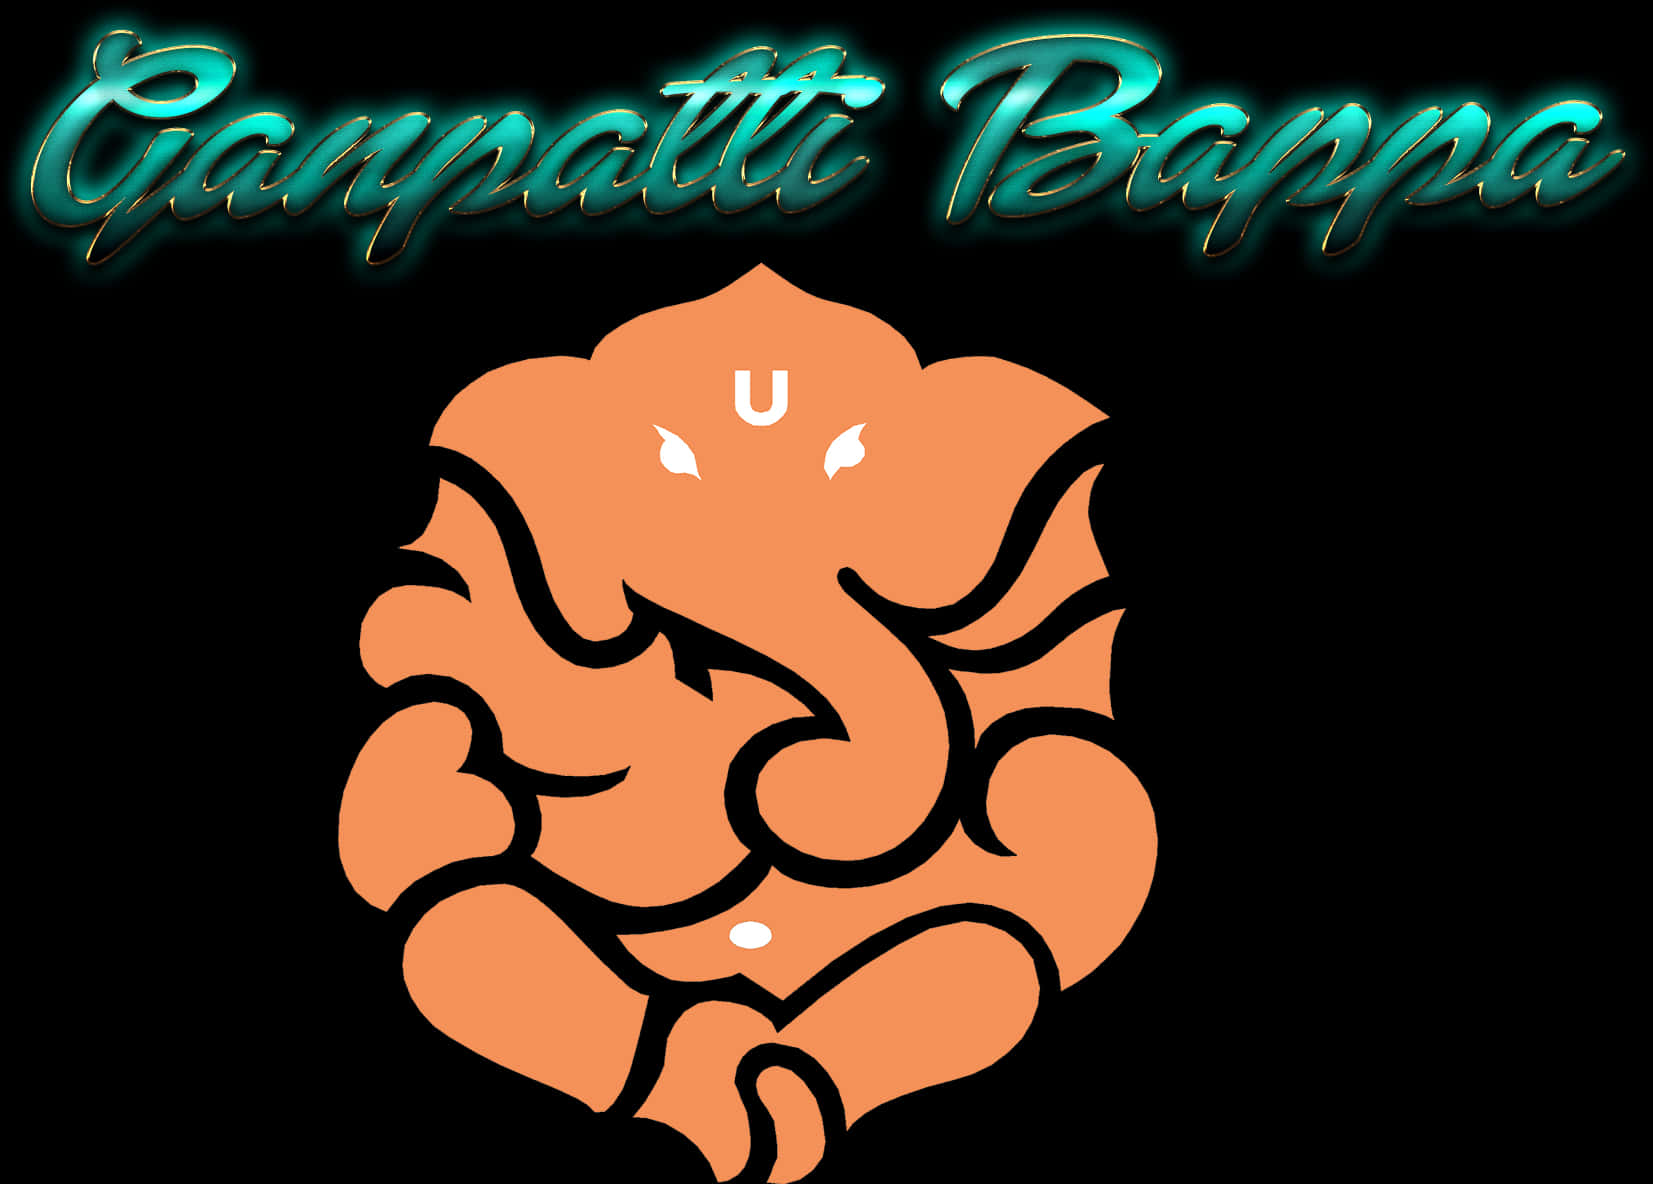 Lord Ganpatti Bappa Png Image Download - Ganpati Png Images Clipart, Transparent Png